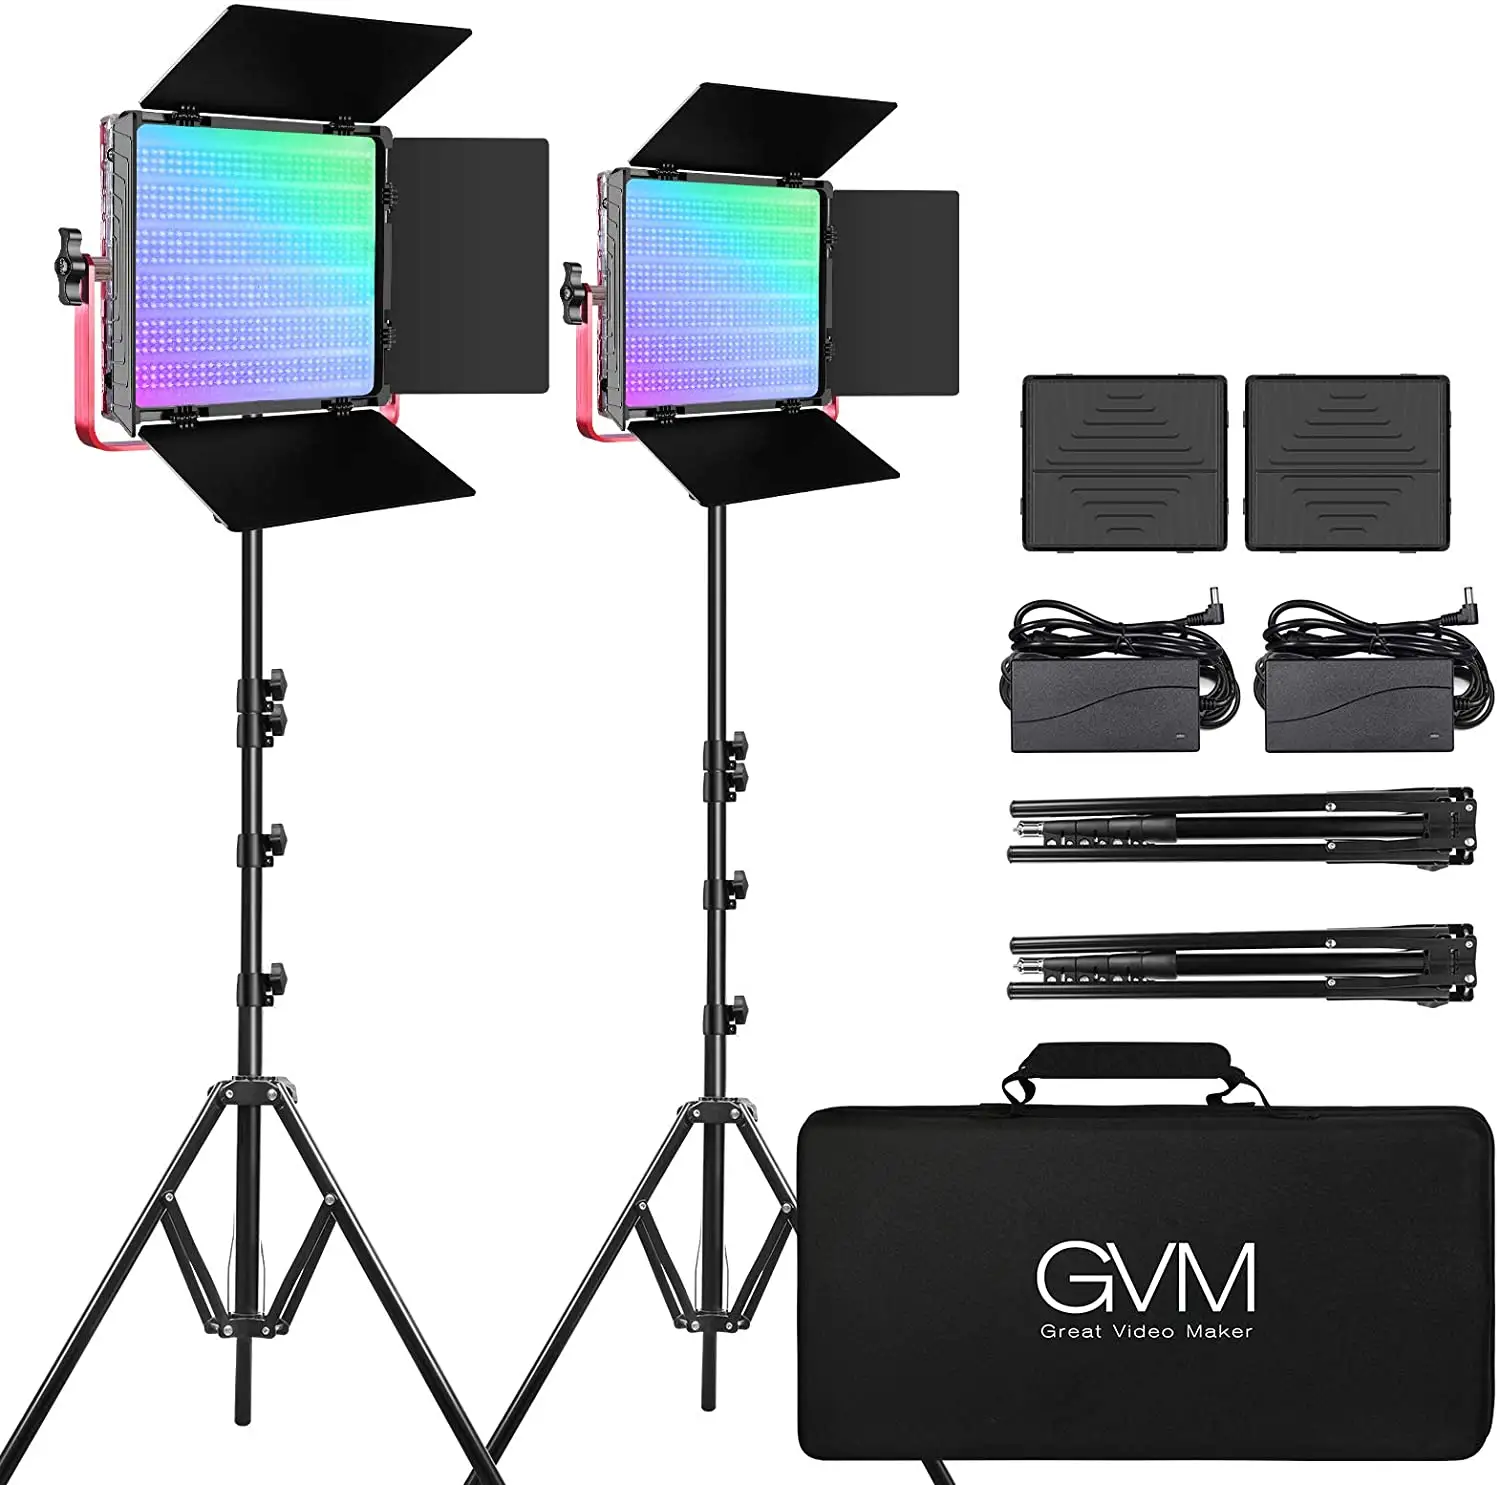 Gvm grande videomaker 1200d pro rgb led, kit de iluminação de vídeo 50w com controle por aplicativo, kit de iluminação de fotografia